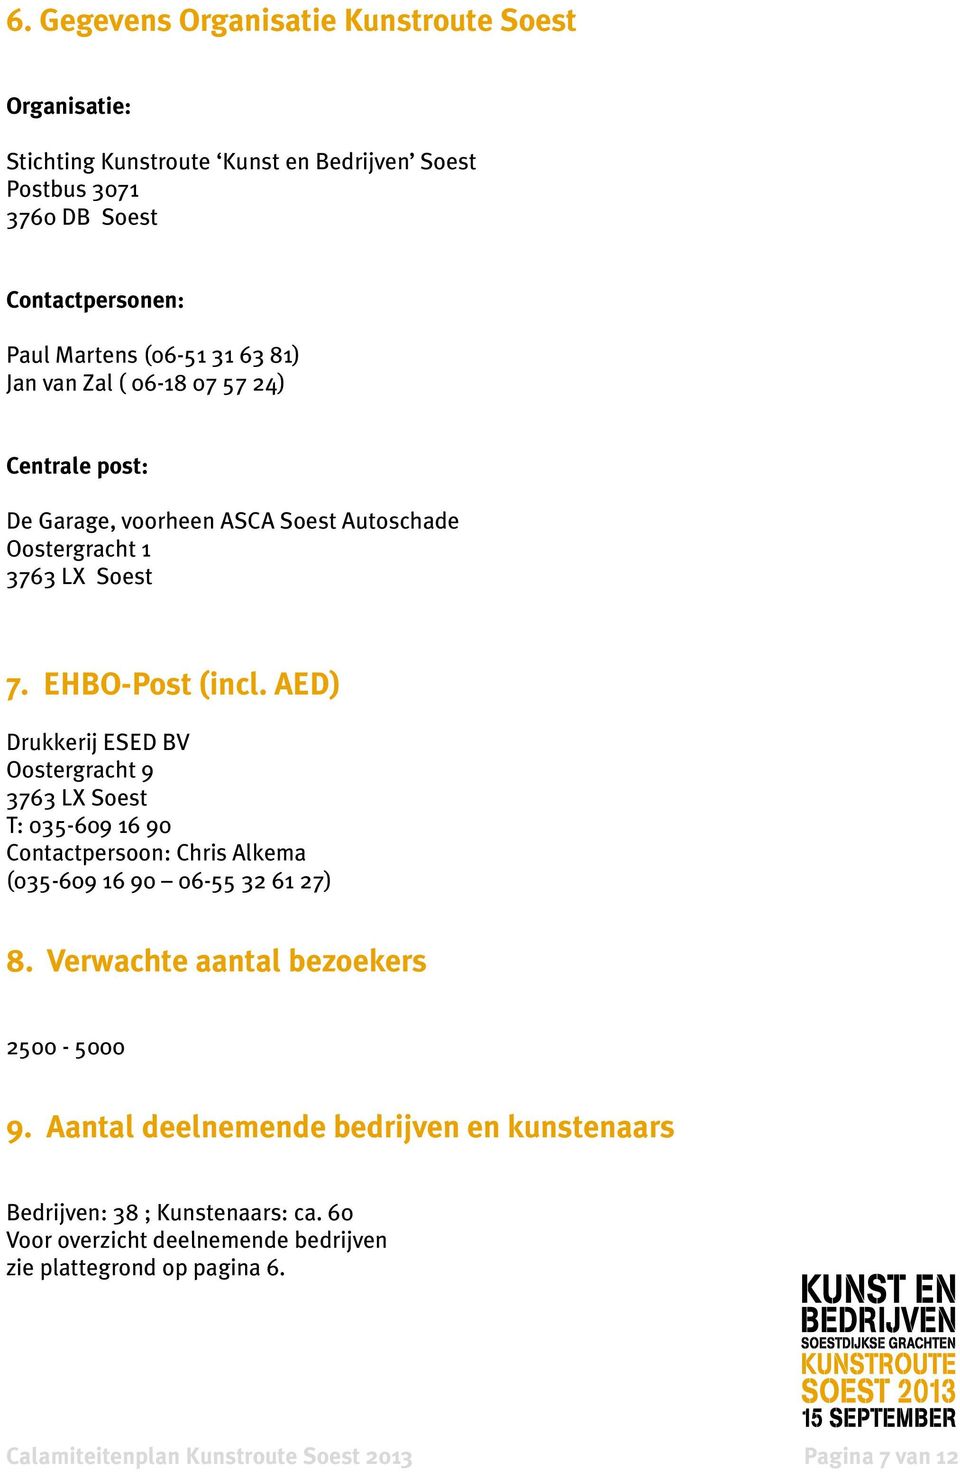 AED) Drukkerij ESED BV Oostergracht 9 3763 LX Soest T: 035-609 16 90 Contactpersoon: Chris Alkema (035-609 16 90 06-55 32 61 27) 8. Verwachte aantal bezoekers 2500-5000 9.